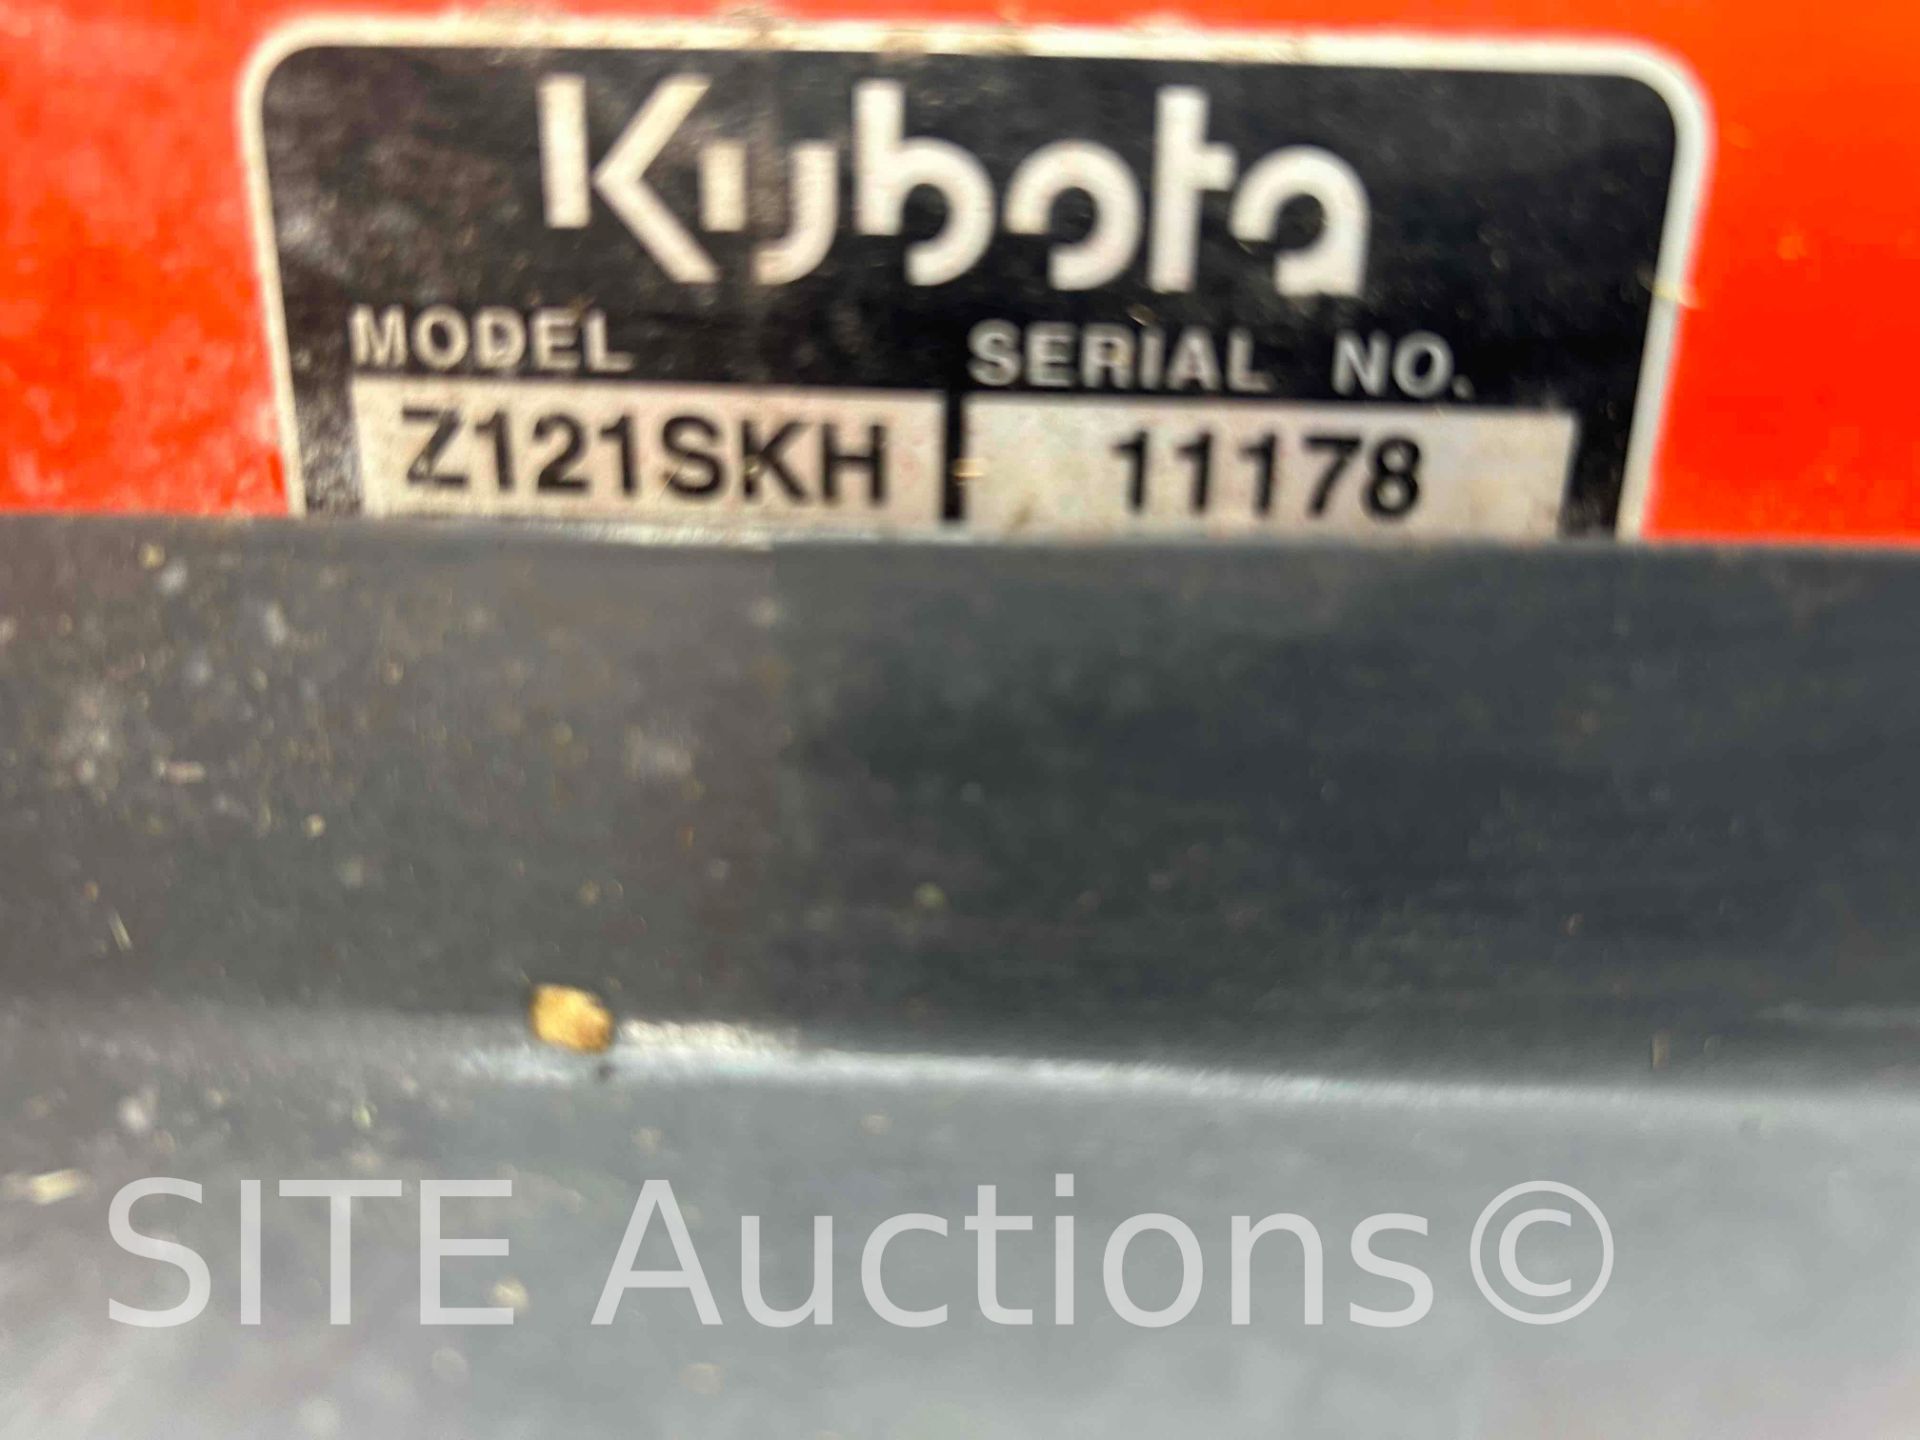 Kubota Z121SKH Zero Turn Mower - Image 6 of 9